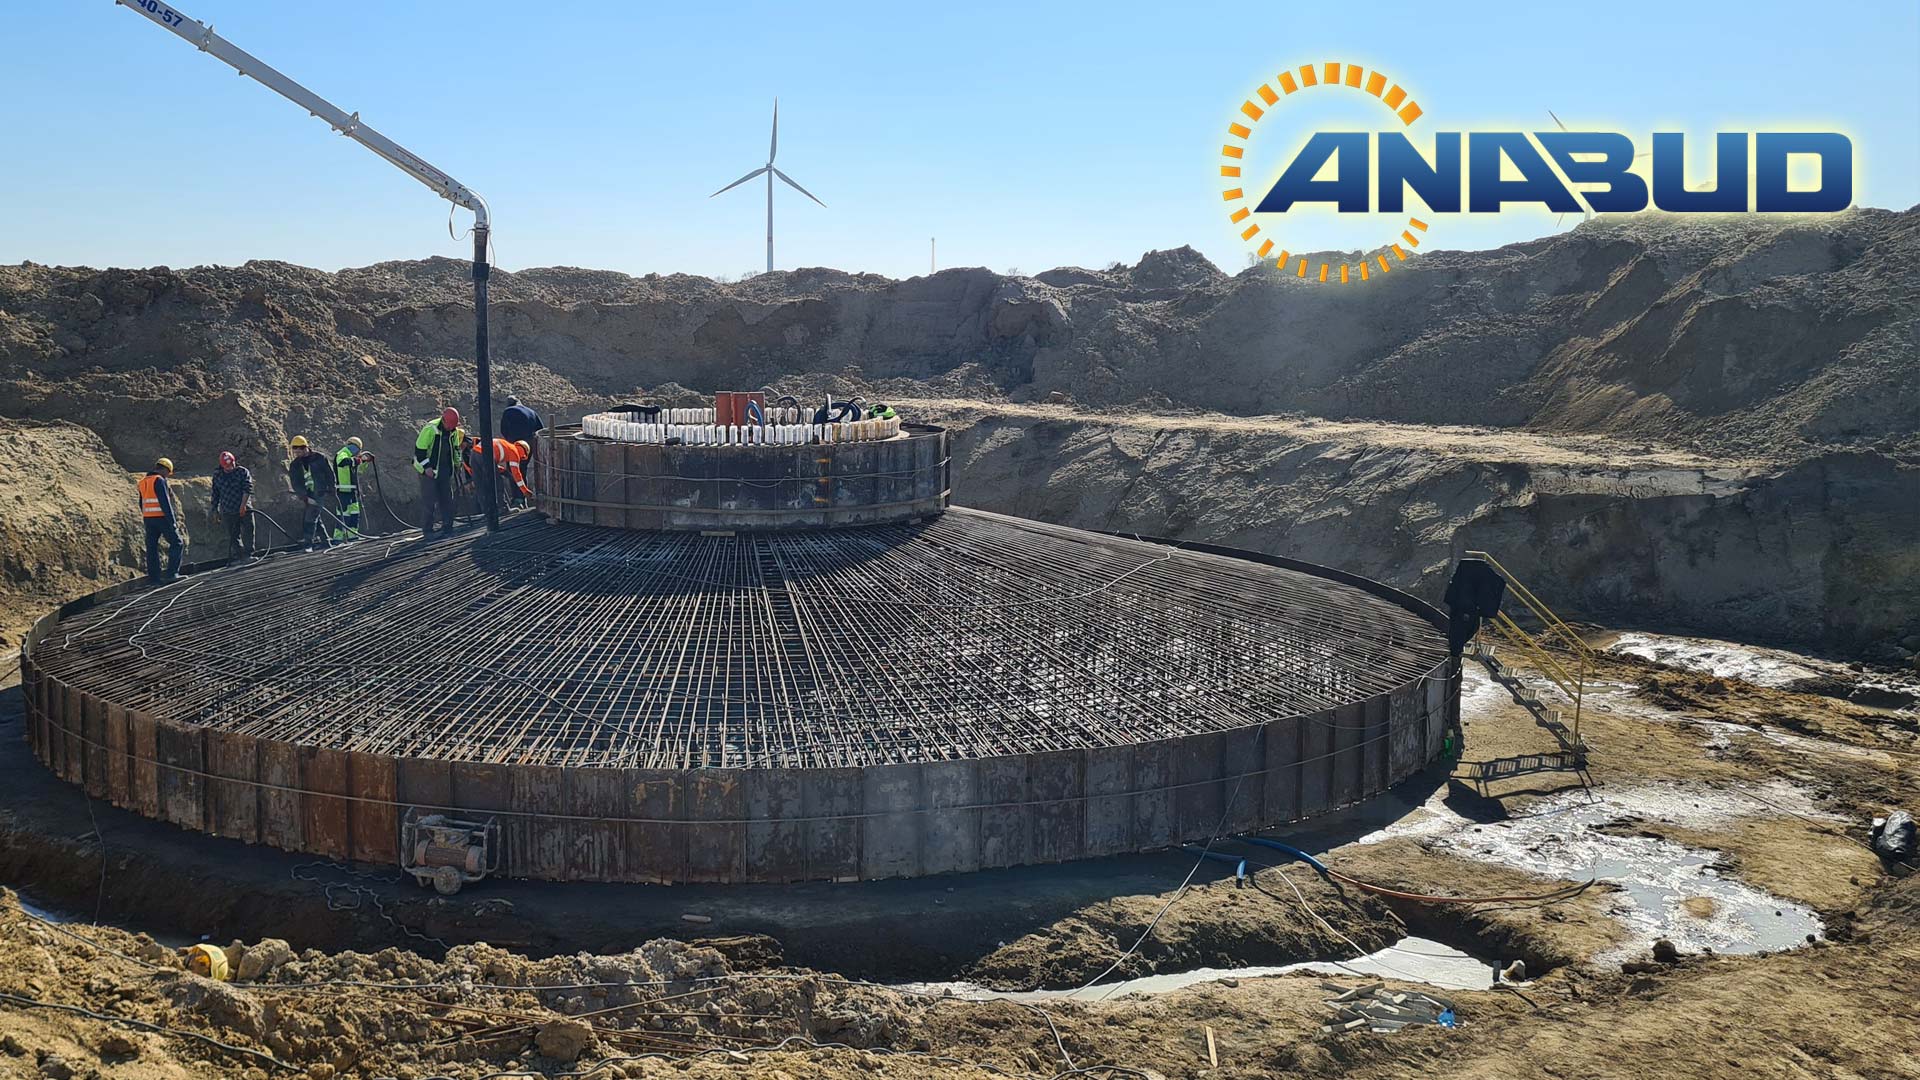 Firma Anabud postawiła wybudowała m.in. „pod klucz” cztery Farmy wiatrowe o łącznych mocach od 6 do 16 MW w formule generalnego wykonawstwa. ). To stawia nas w czołówce firm budujących farmy wiatrowe w Polsce.